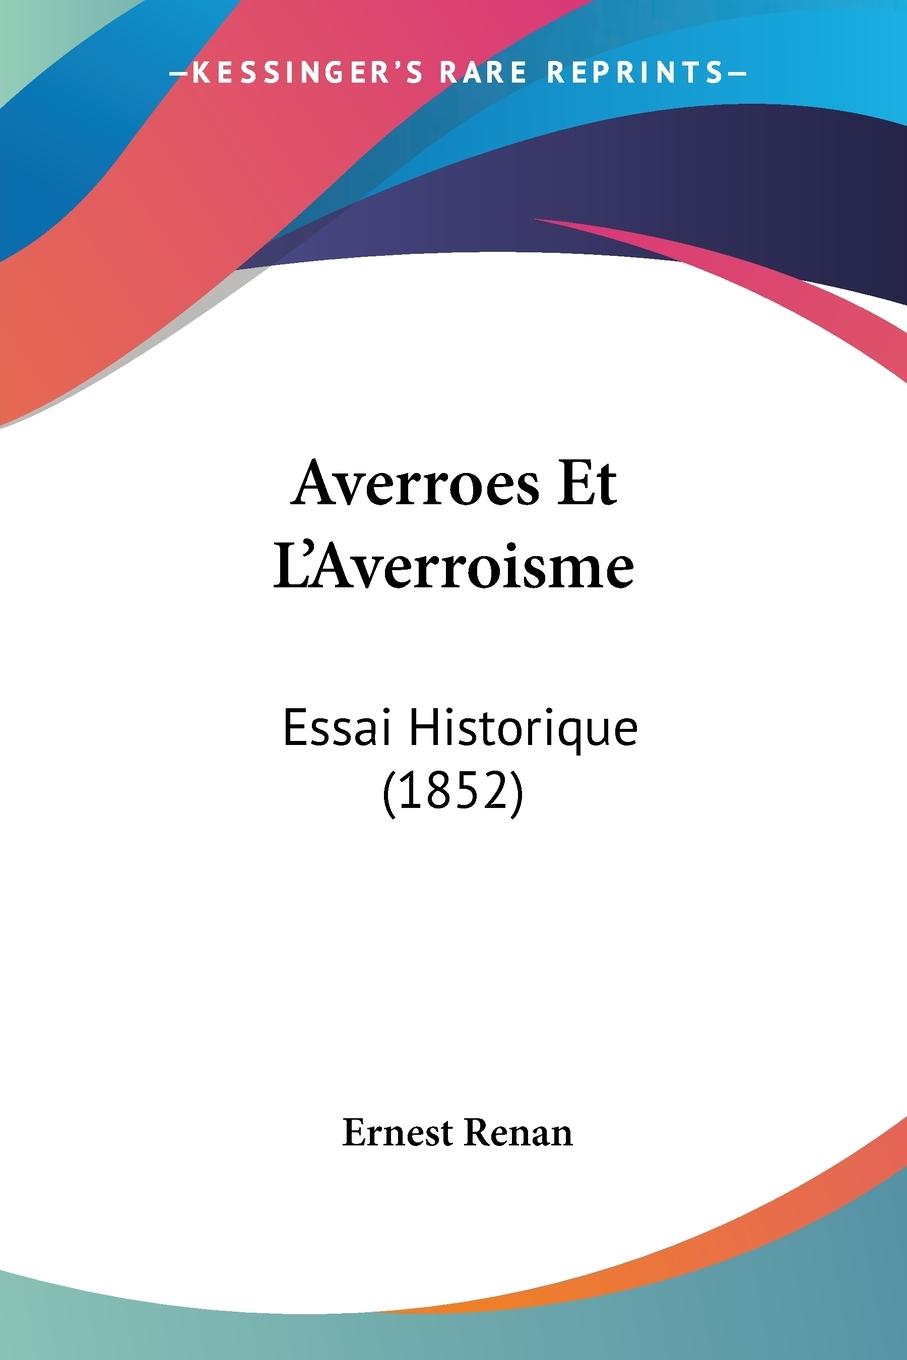 Averroes Et L'Averroisme: Essai Historique (1852)